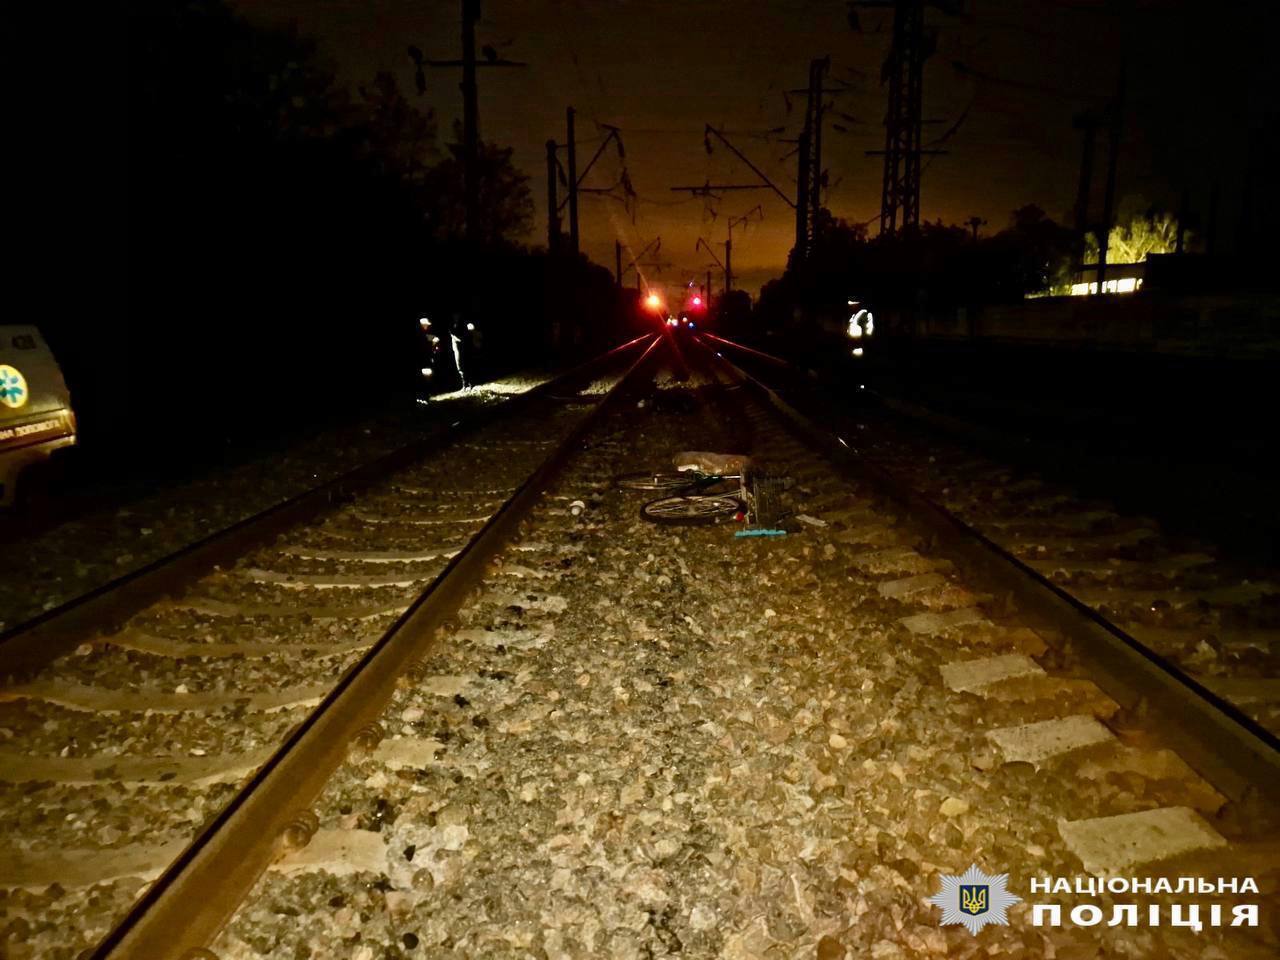 Под Киевом поезд сбил насмерть мужчину: подробности трагедии